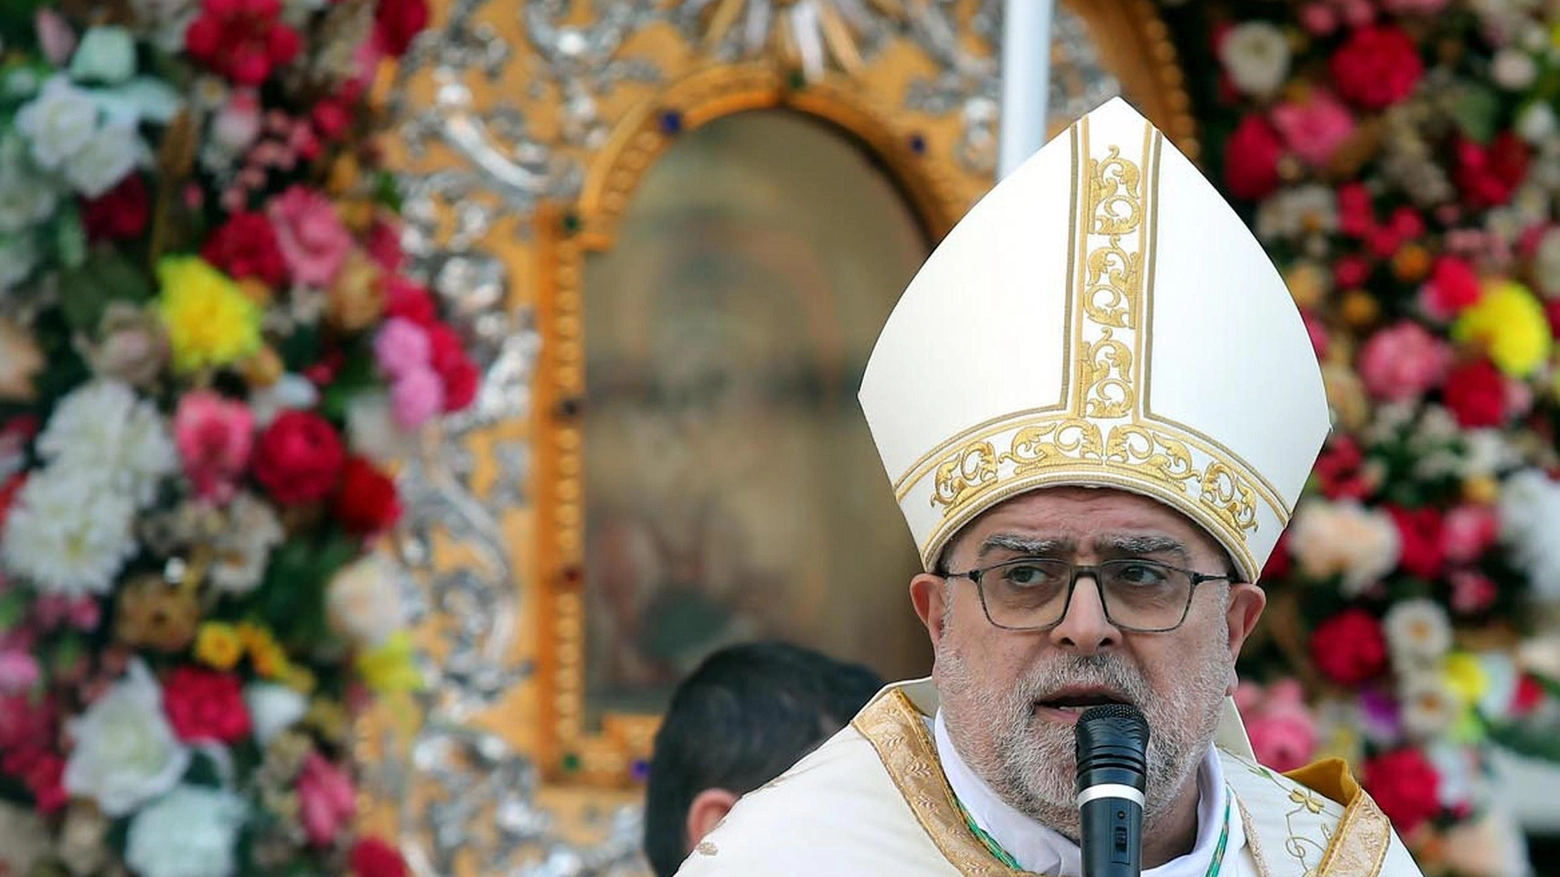 Pellegrinaggio a Lourdes con il vescovo: ultimi posti disponibili